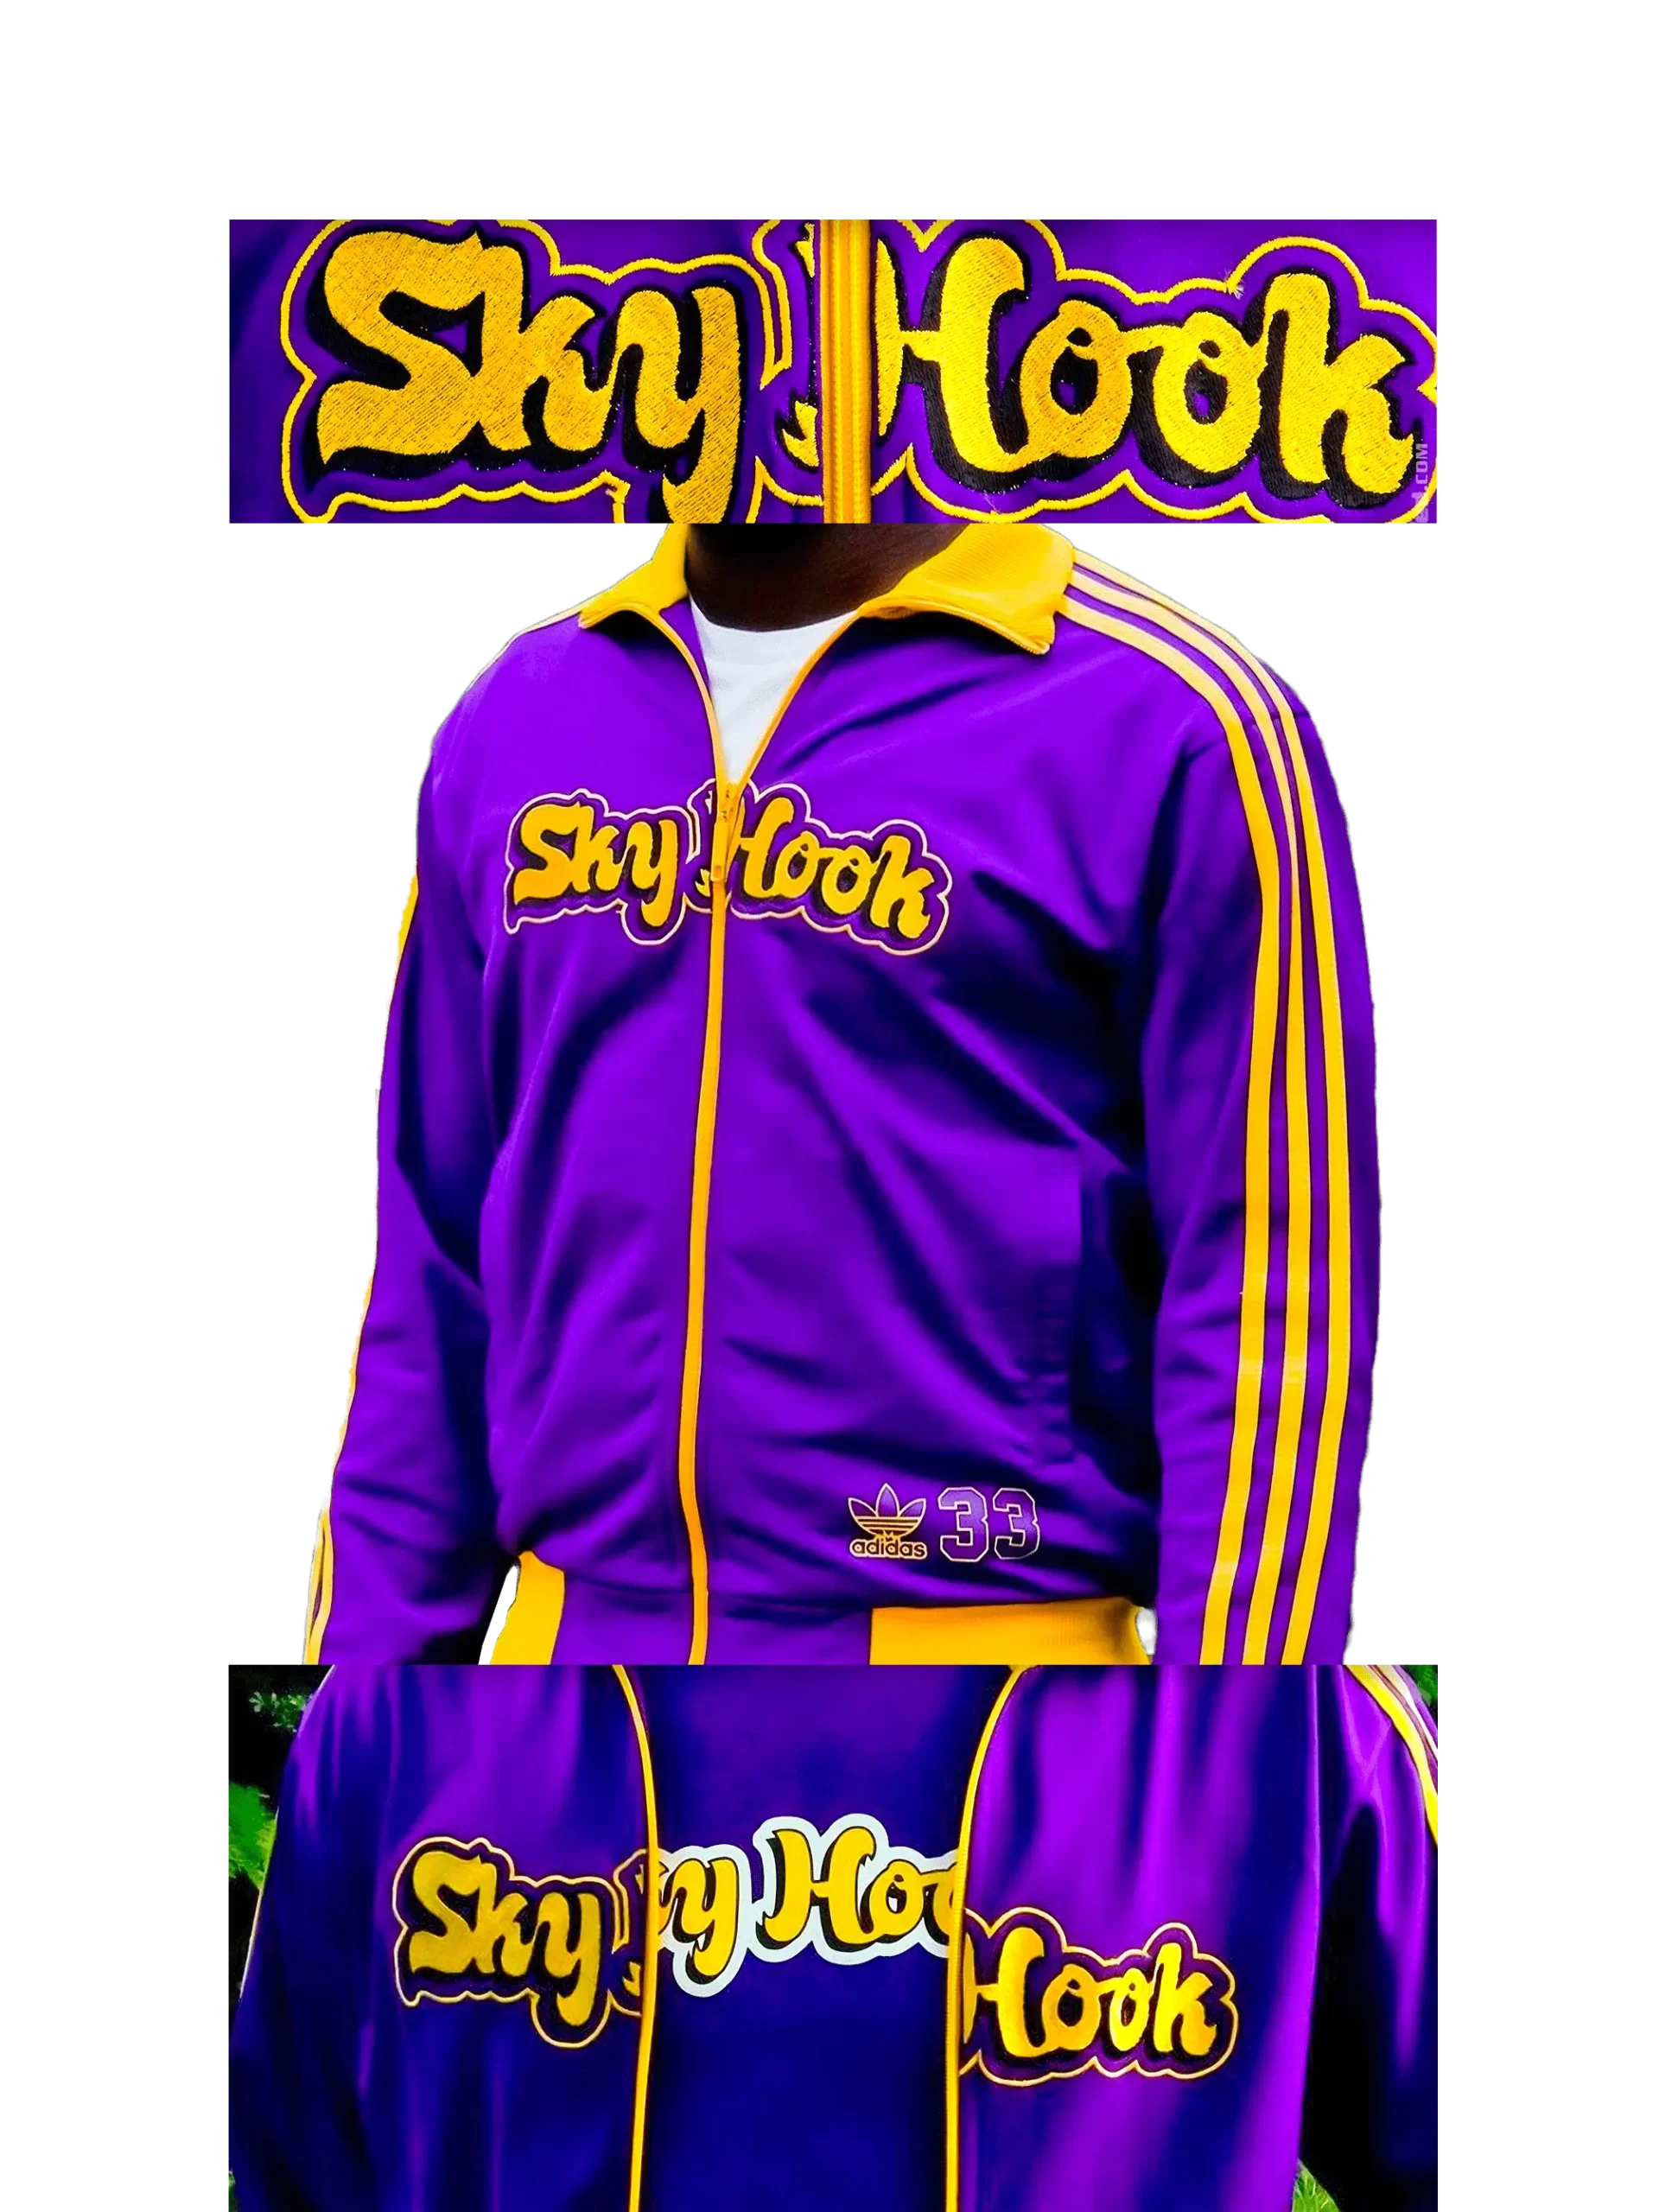 Men's 2004 SkyHook Lakers #33 Track Top by Adidas: Rookie (EnLawded.com file #lmchk75943ip2y124798kg9st)